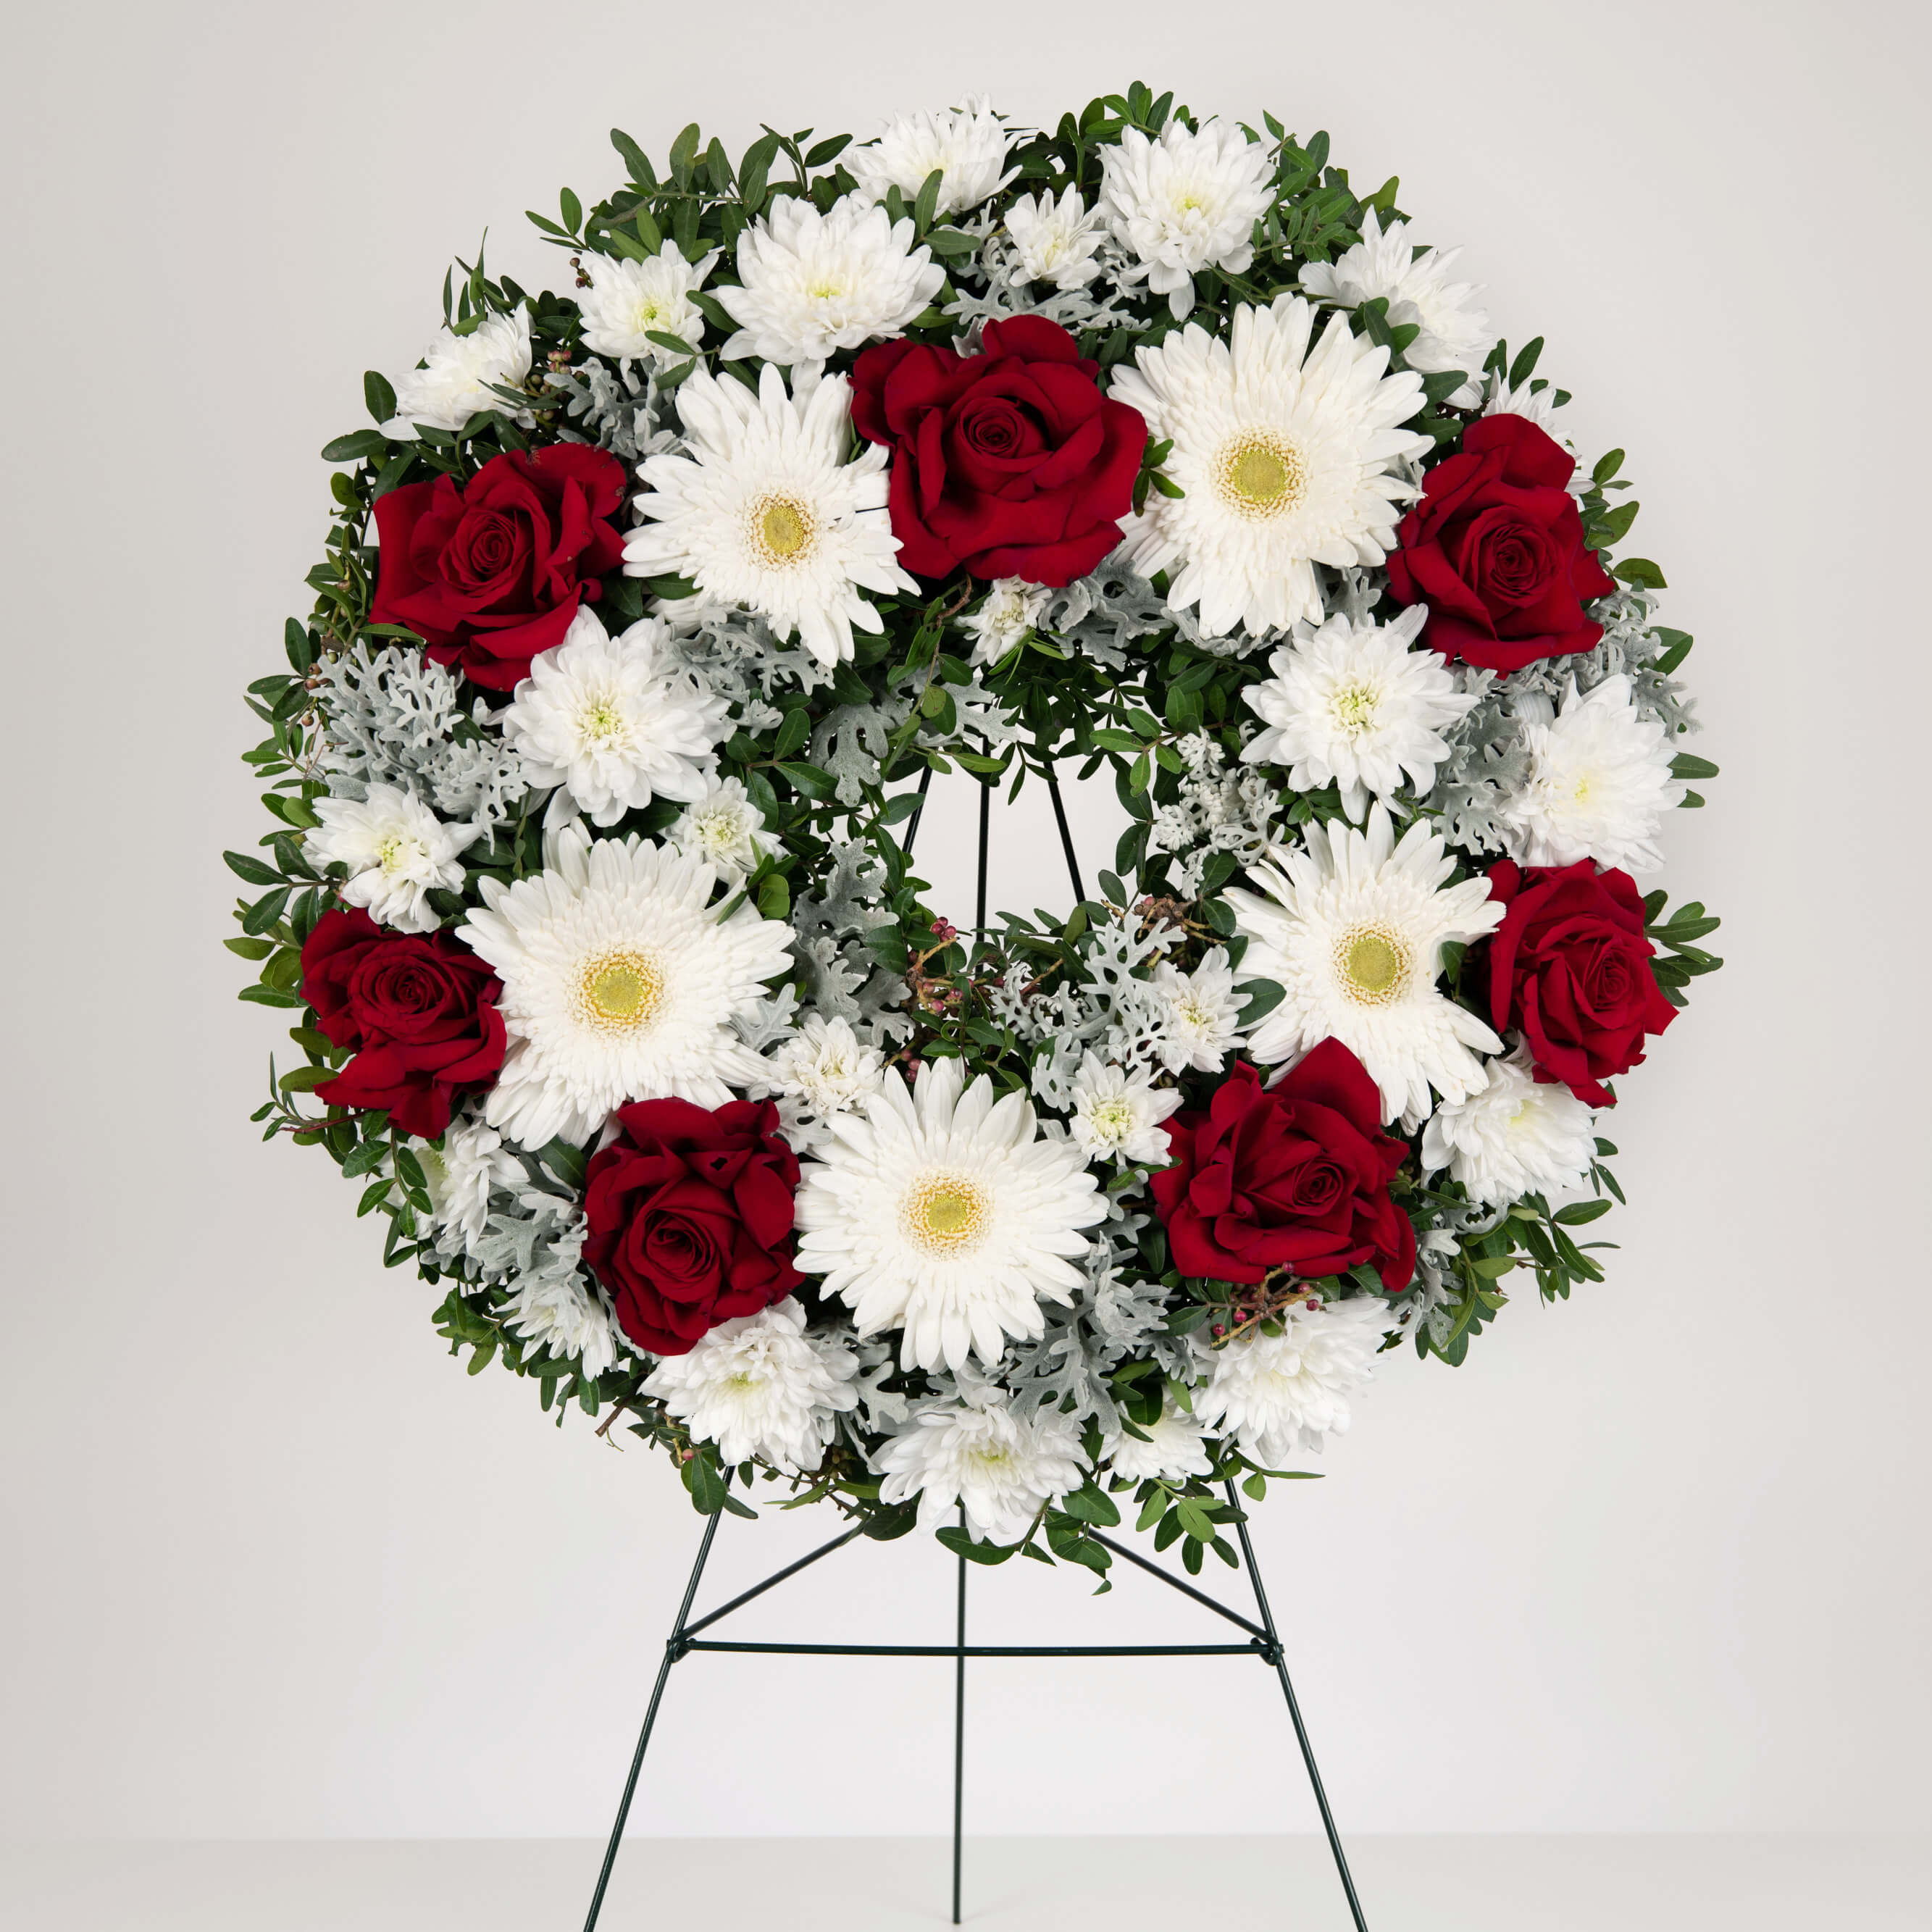 Coroana funerara rotunda cu gerbera si trandafiri rosii speciali, 1